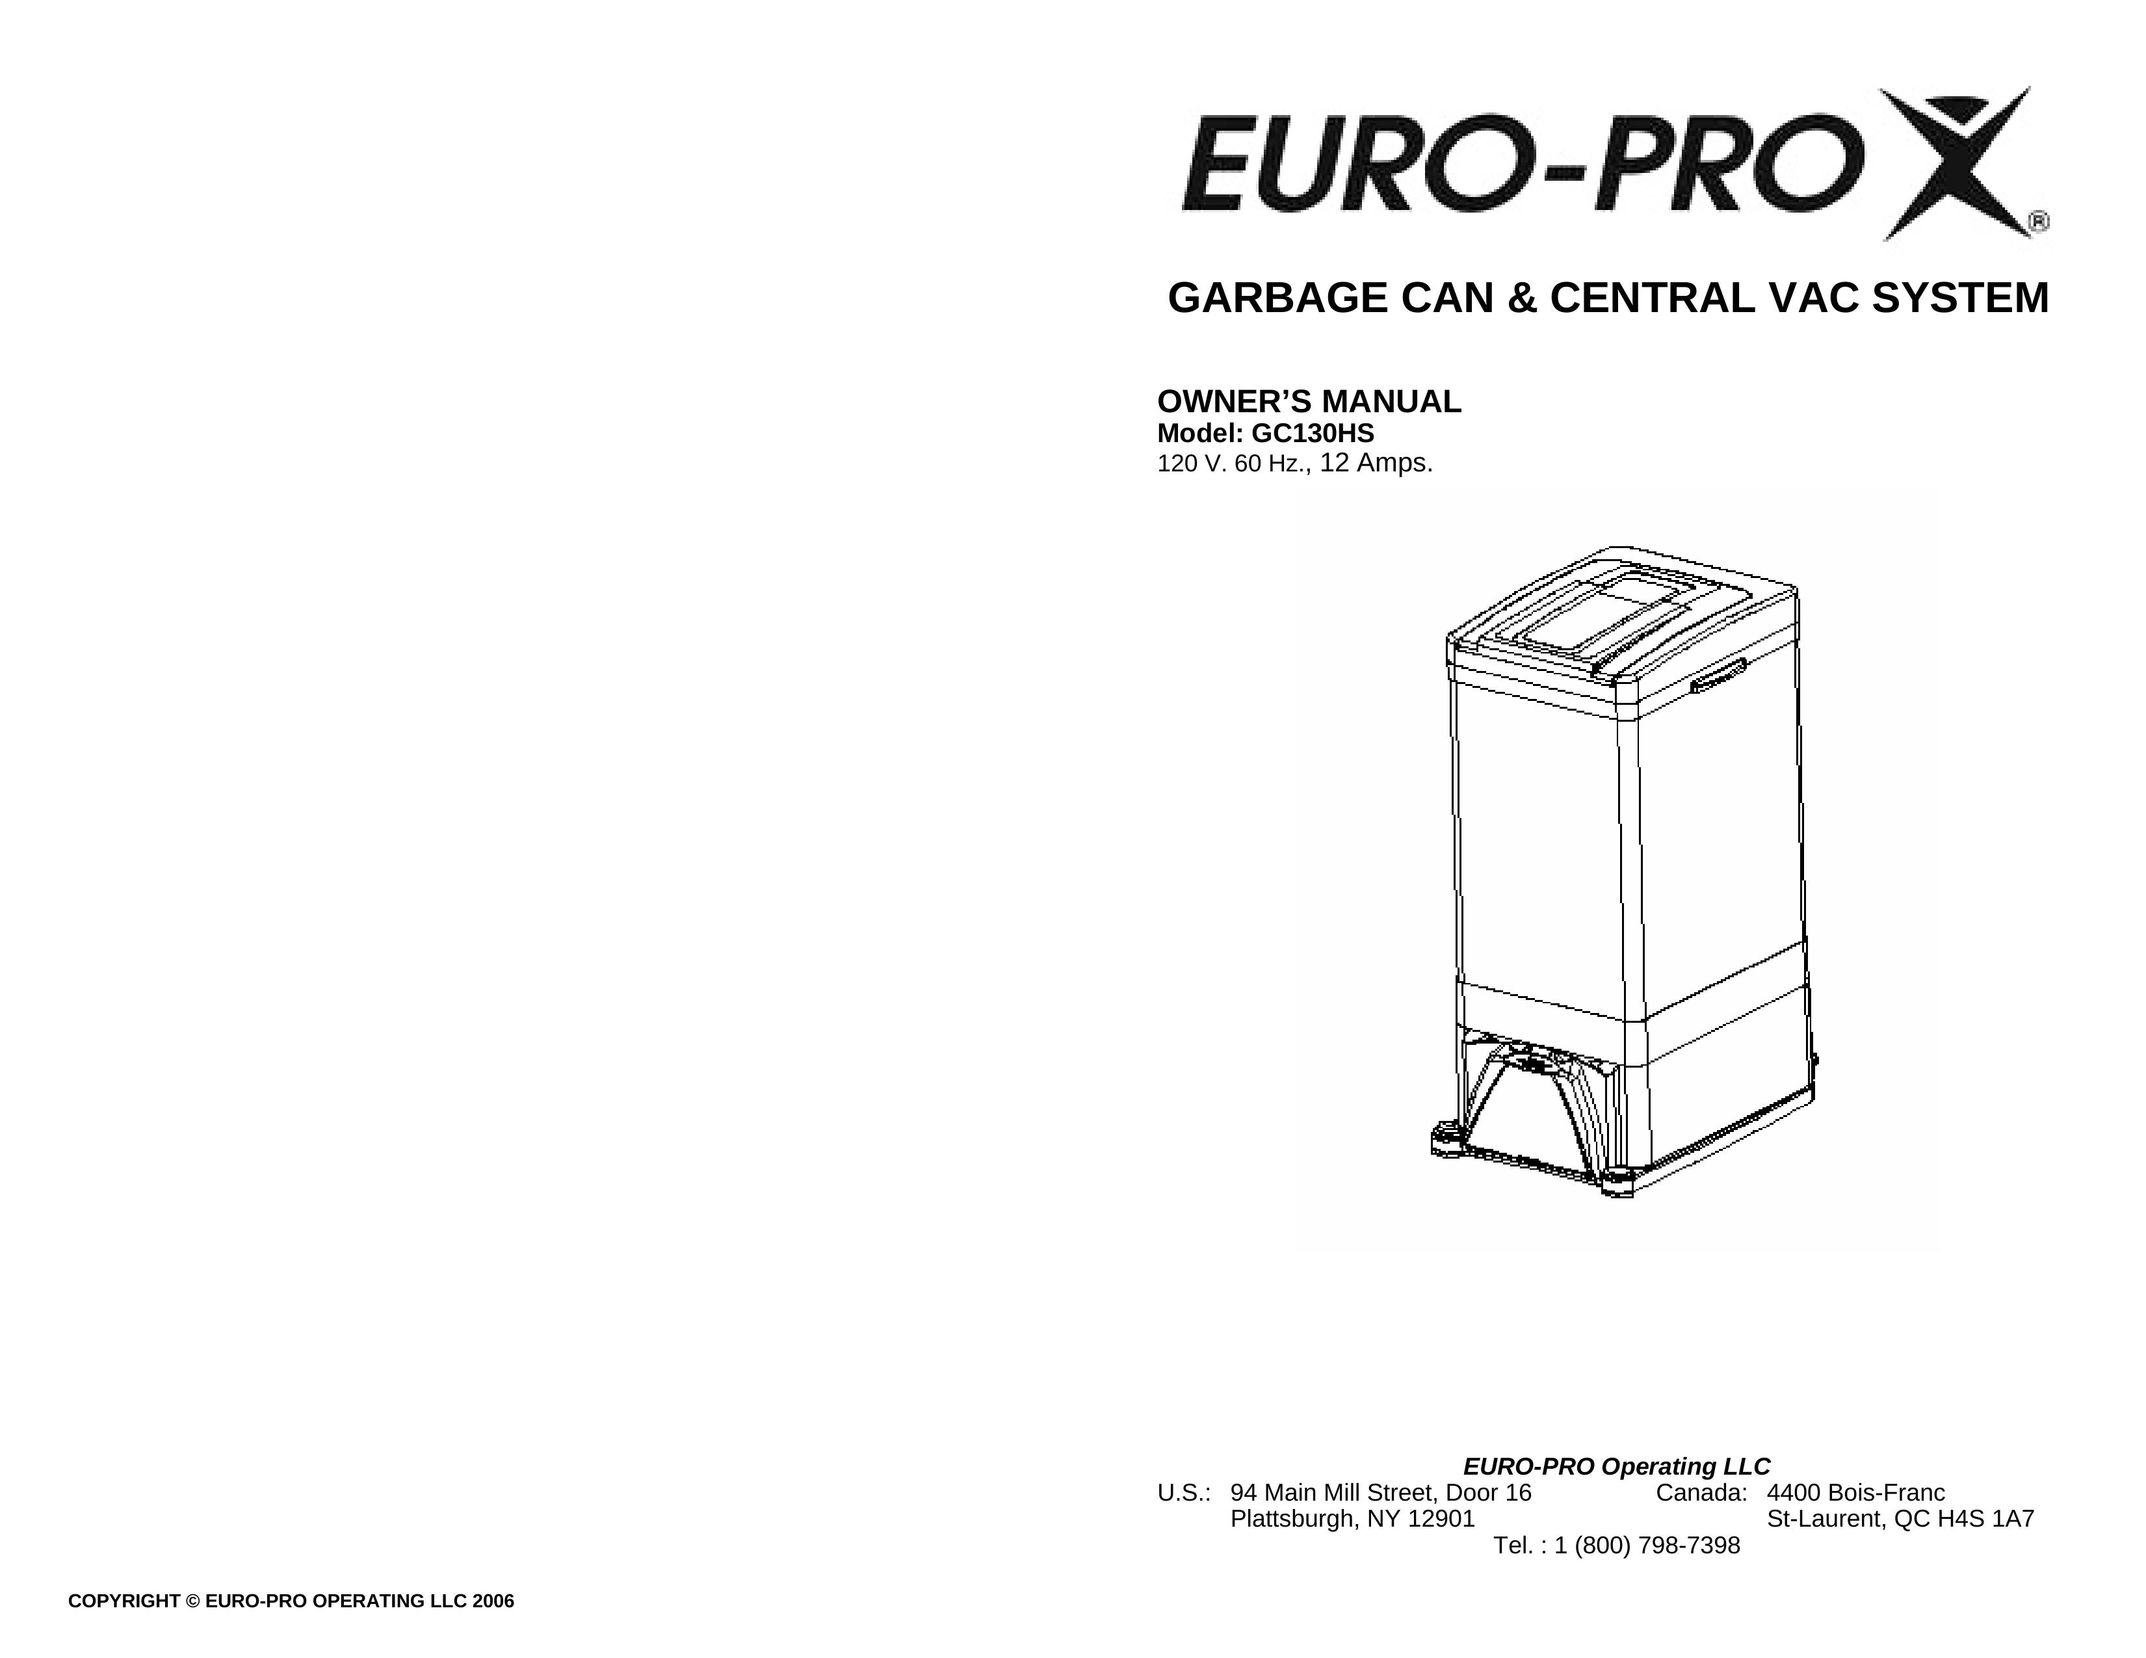 Euro-Pro GC130HS Garbage Disposal User Manual